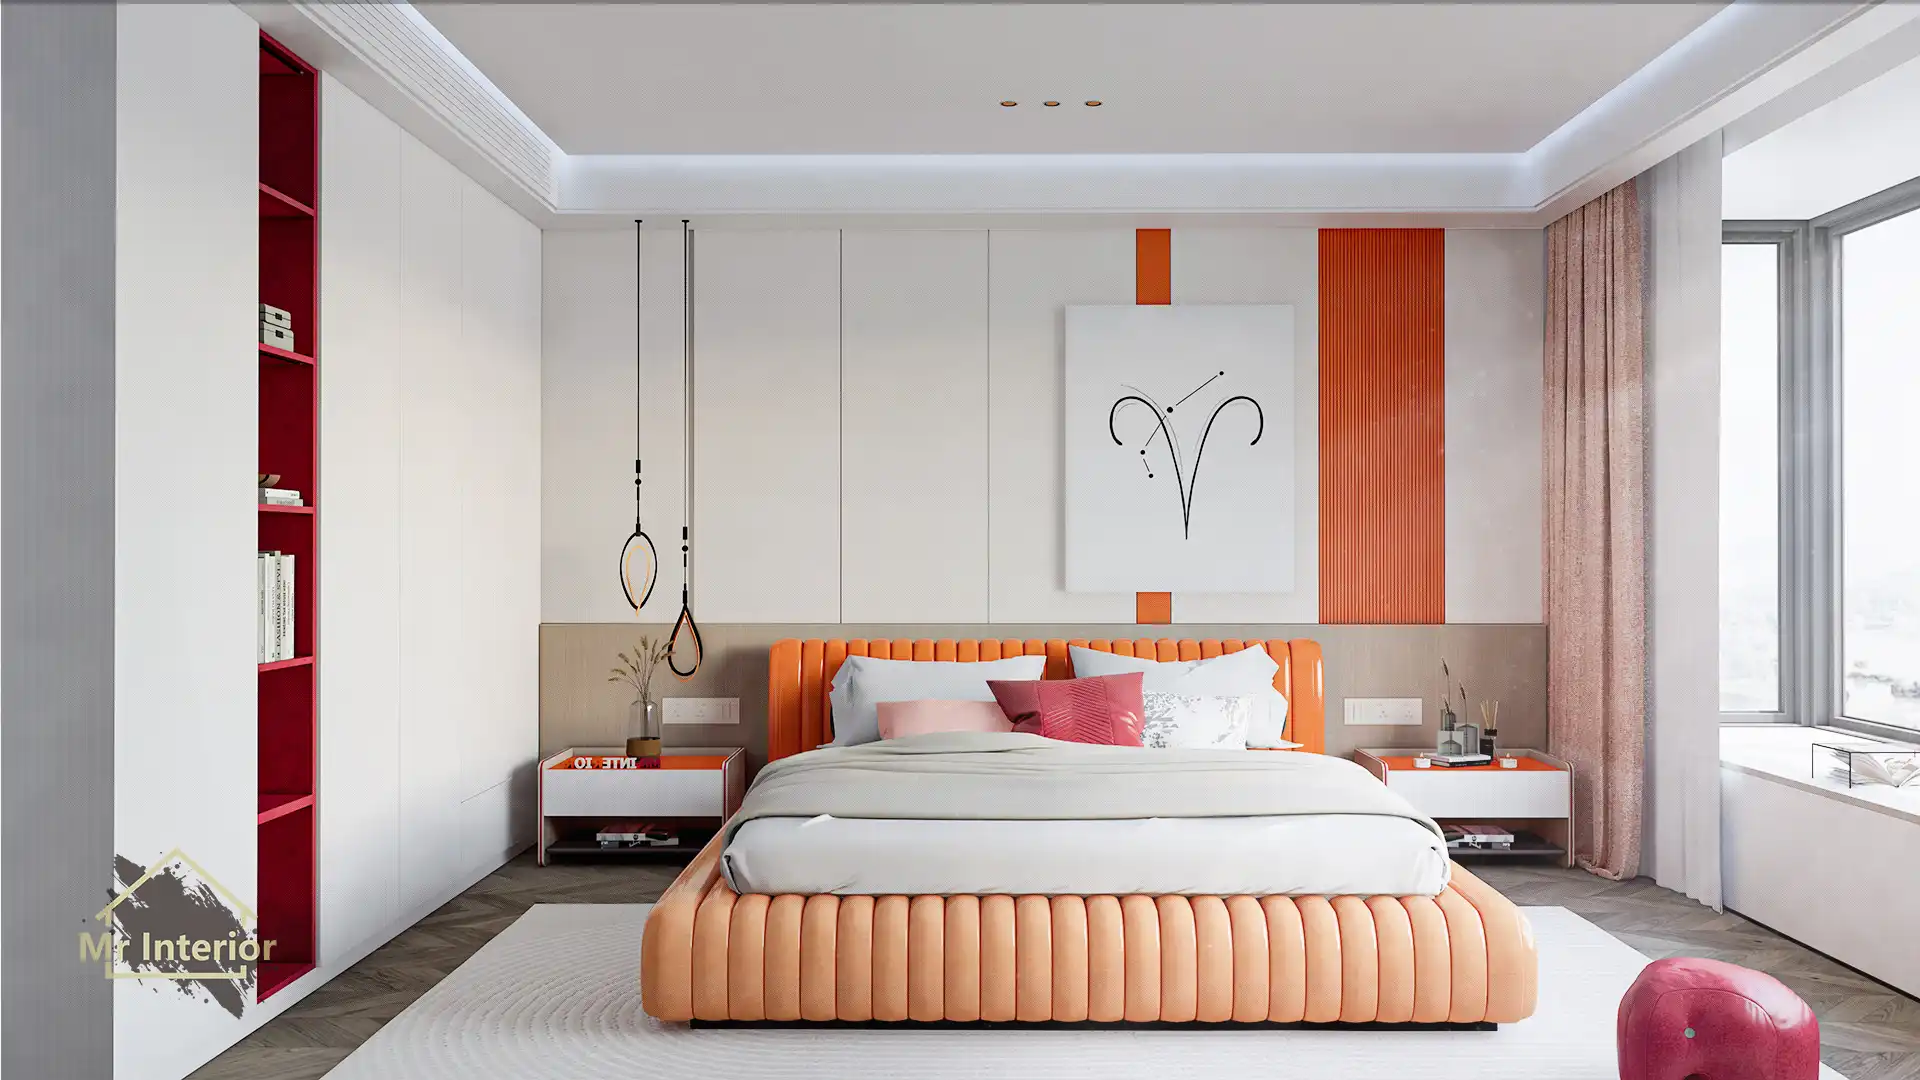 這是白羊座的睡房。設計風格探用了現代風；色調明亮，米色主調，紅色及橙色點綴；圖片中句含了橙色軟墊雙人床，白色掩門大衣櫃，紅色開方式書架，白色及橙色特色牆身，白色及橙色床頭櫃，紅色懶人梳化，白羊座裝飾及自然光等。Mr Interior室內設計裝修及傢俬風格。